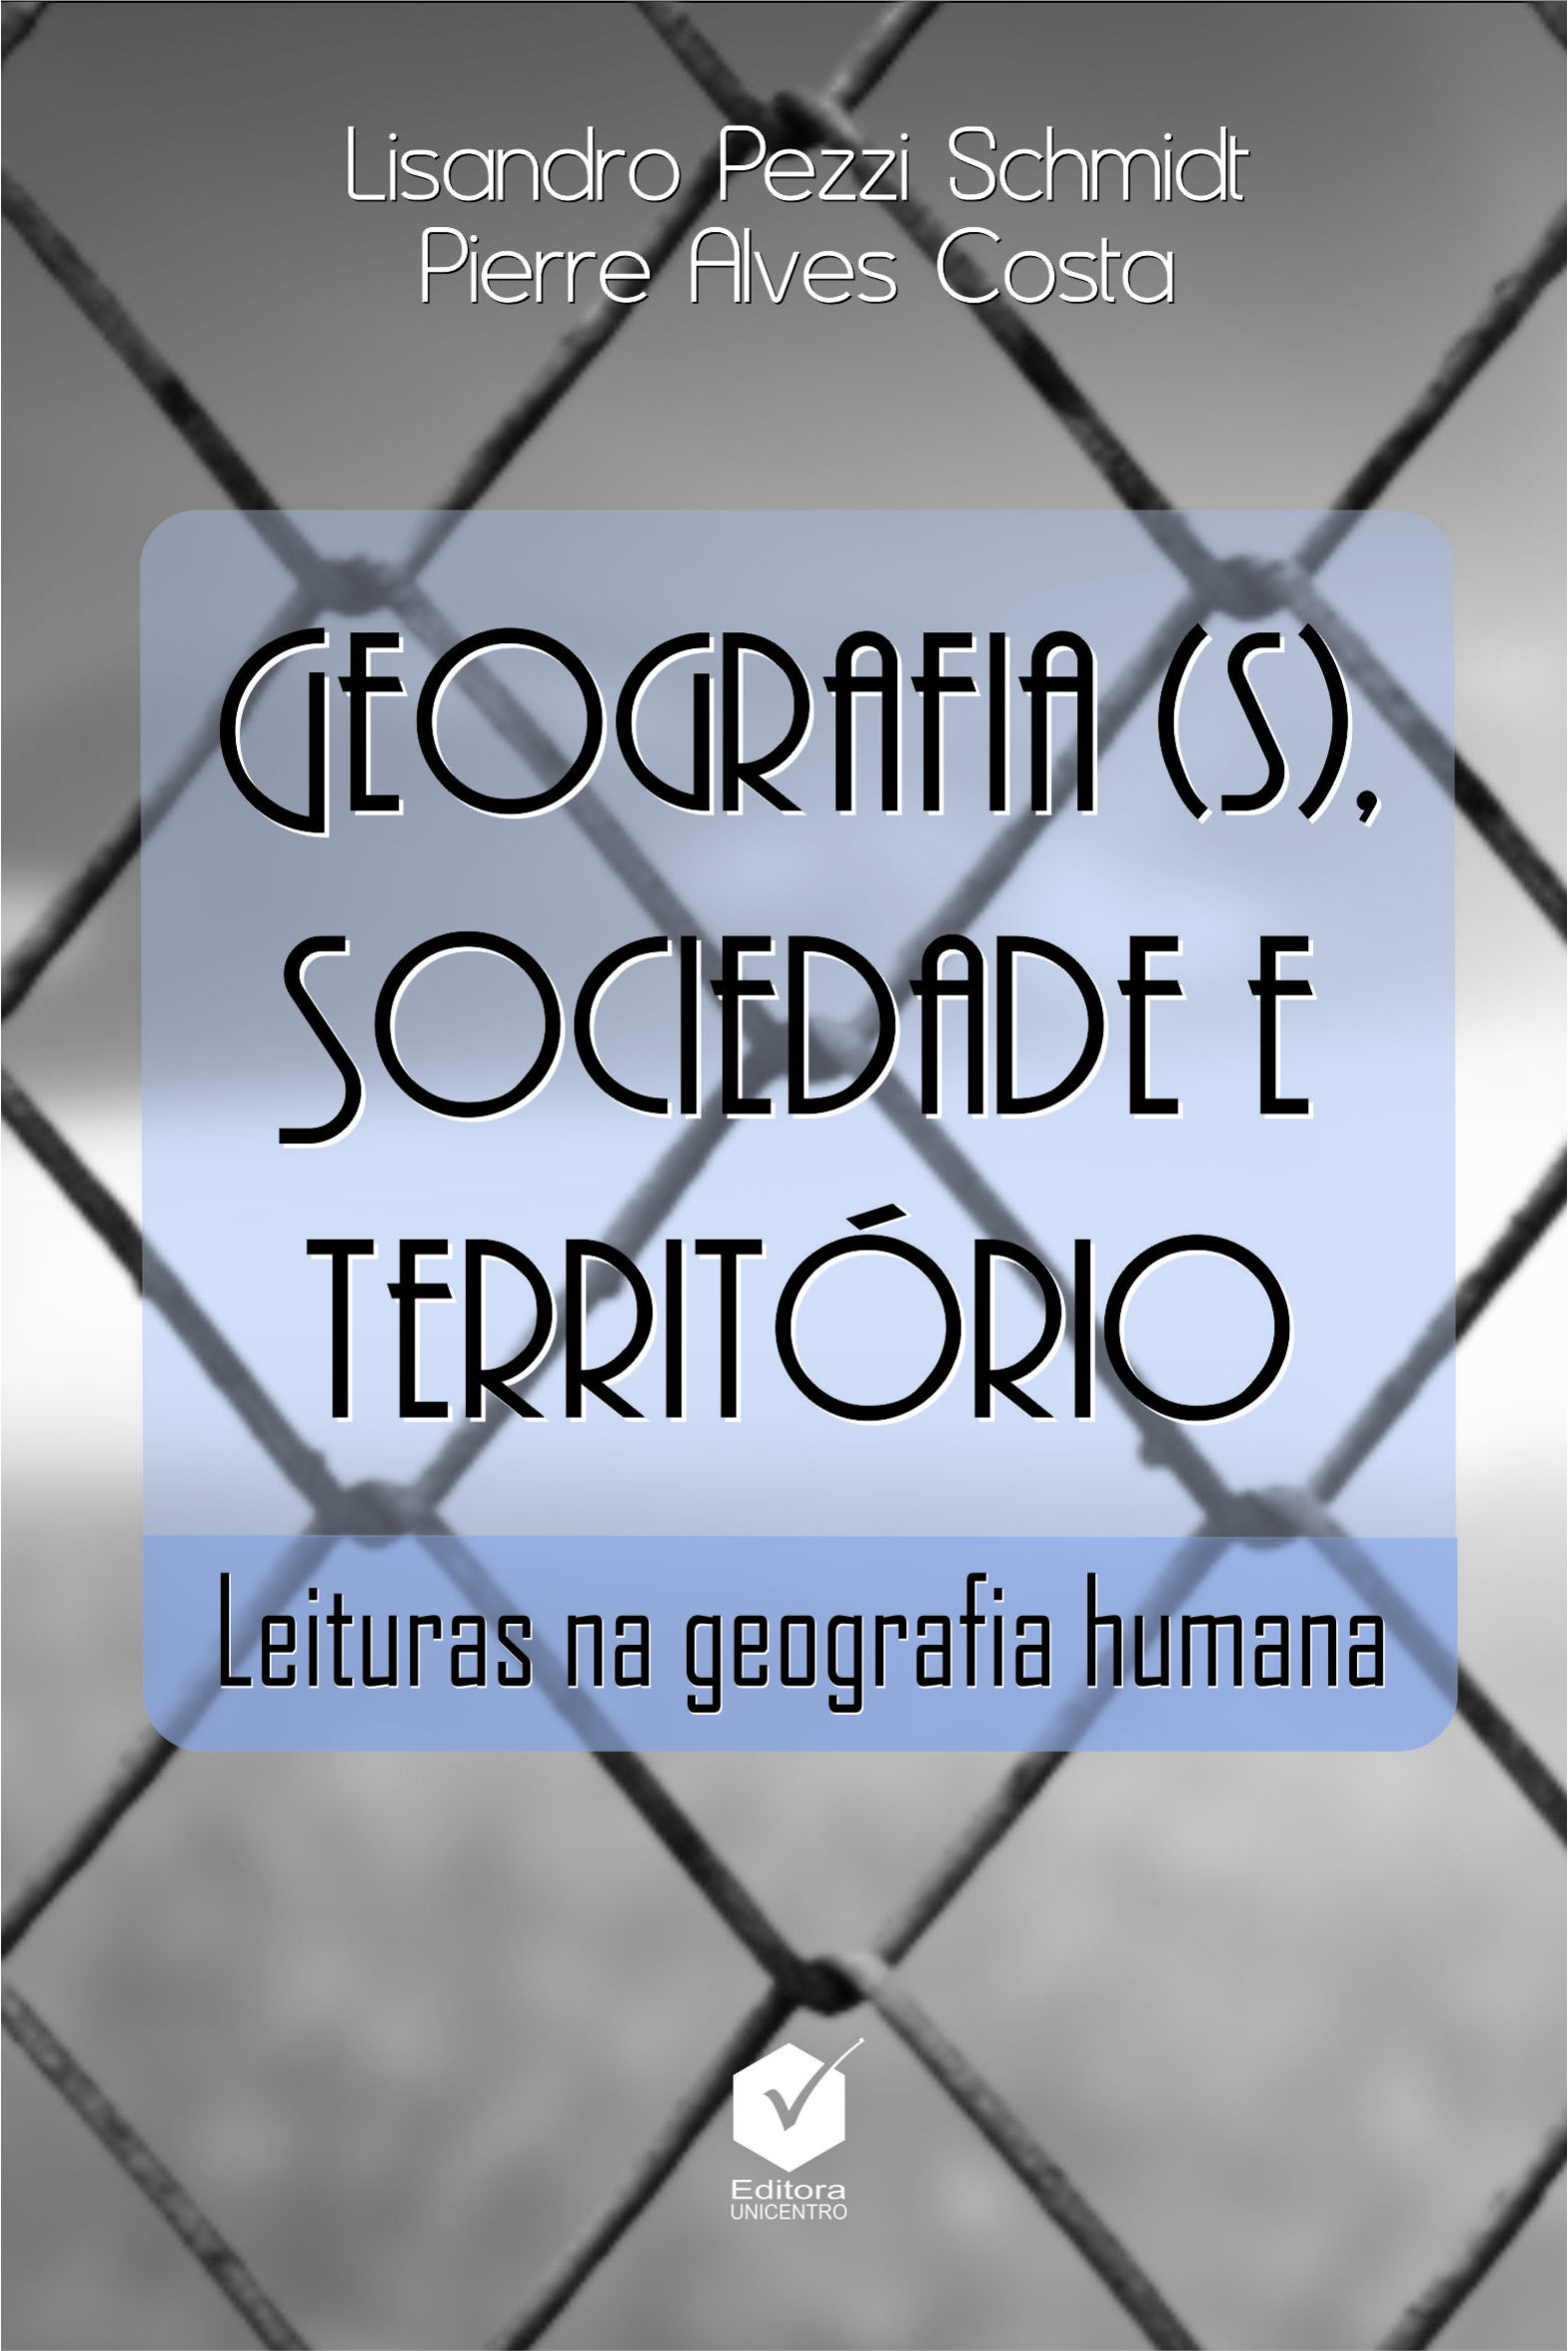 Geografia(s), sociedade e território